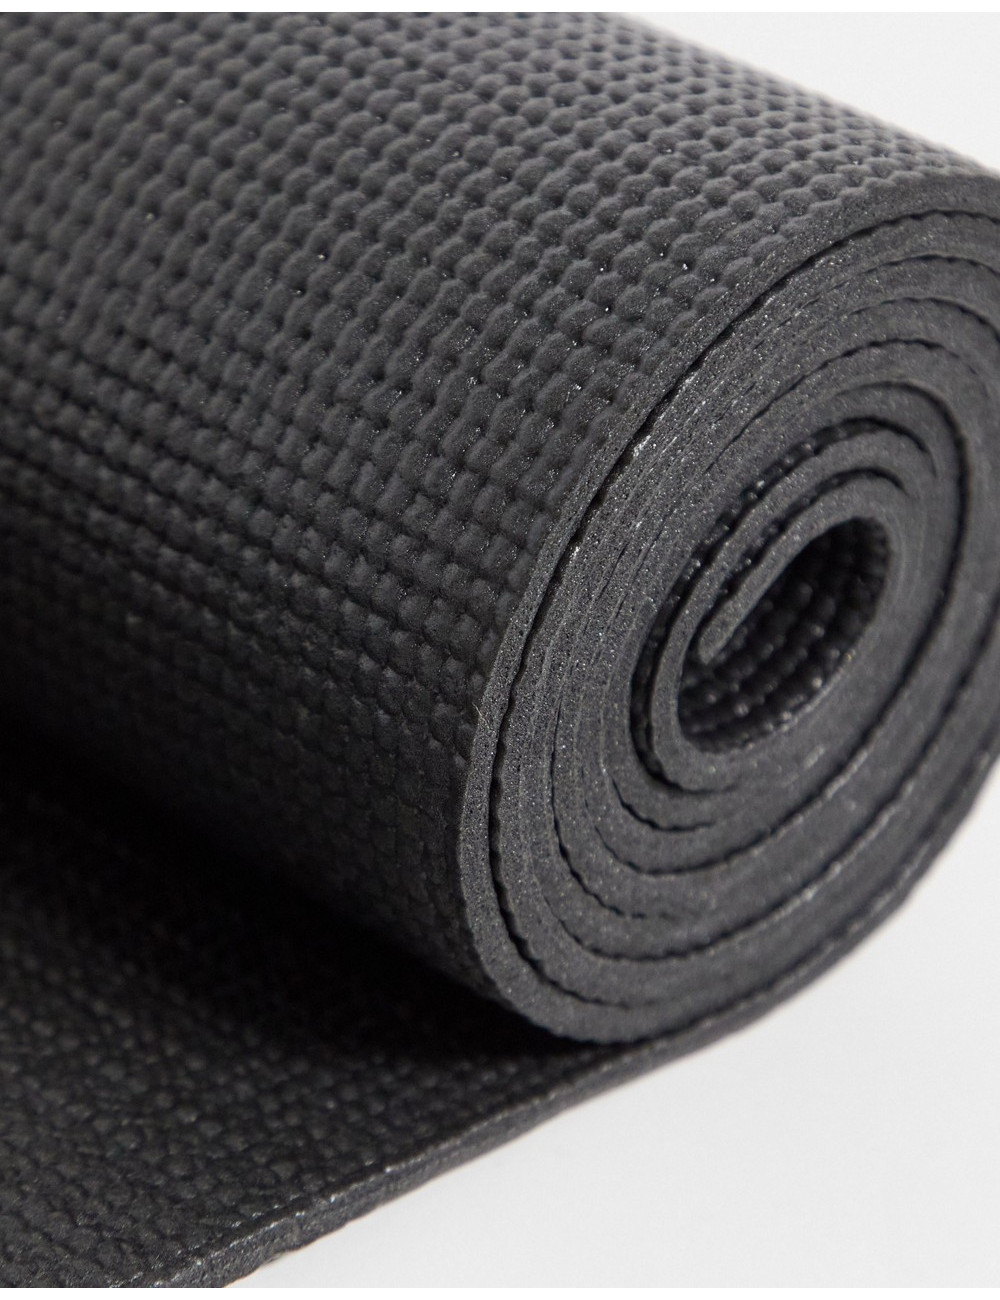 FitHut yoga mat in black